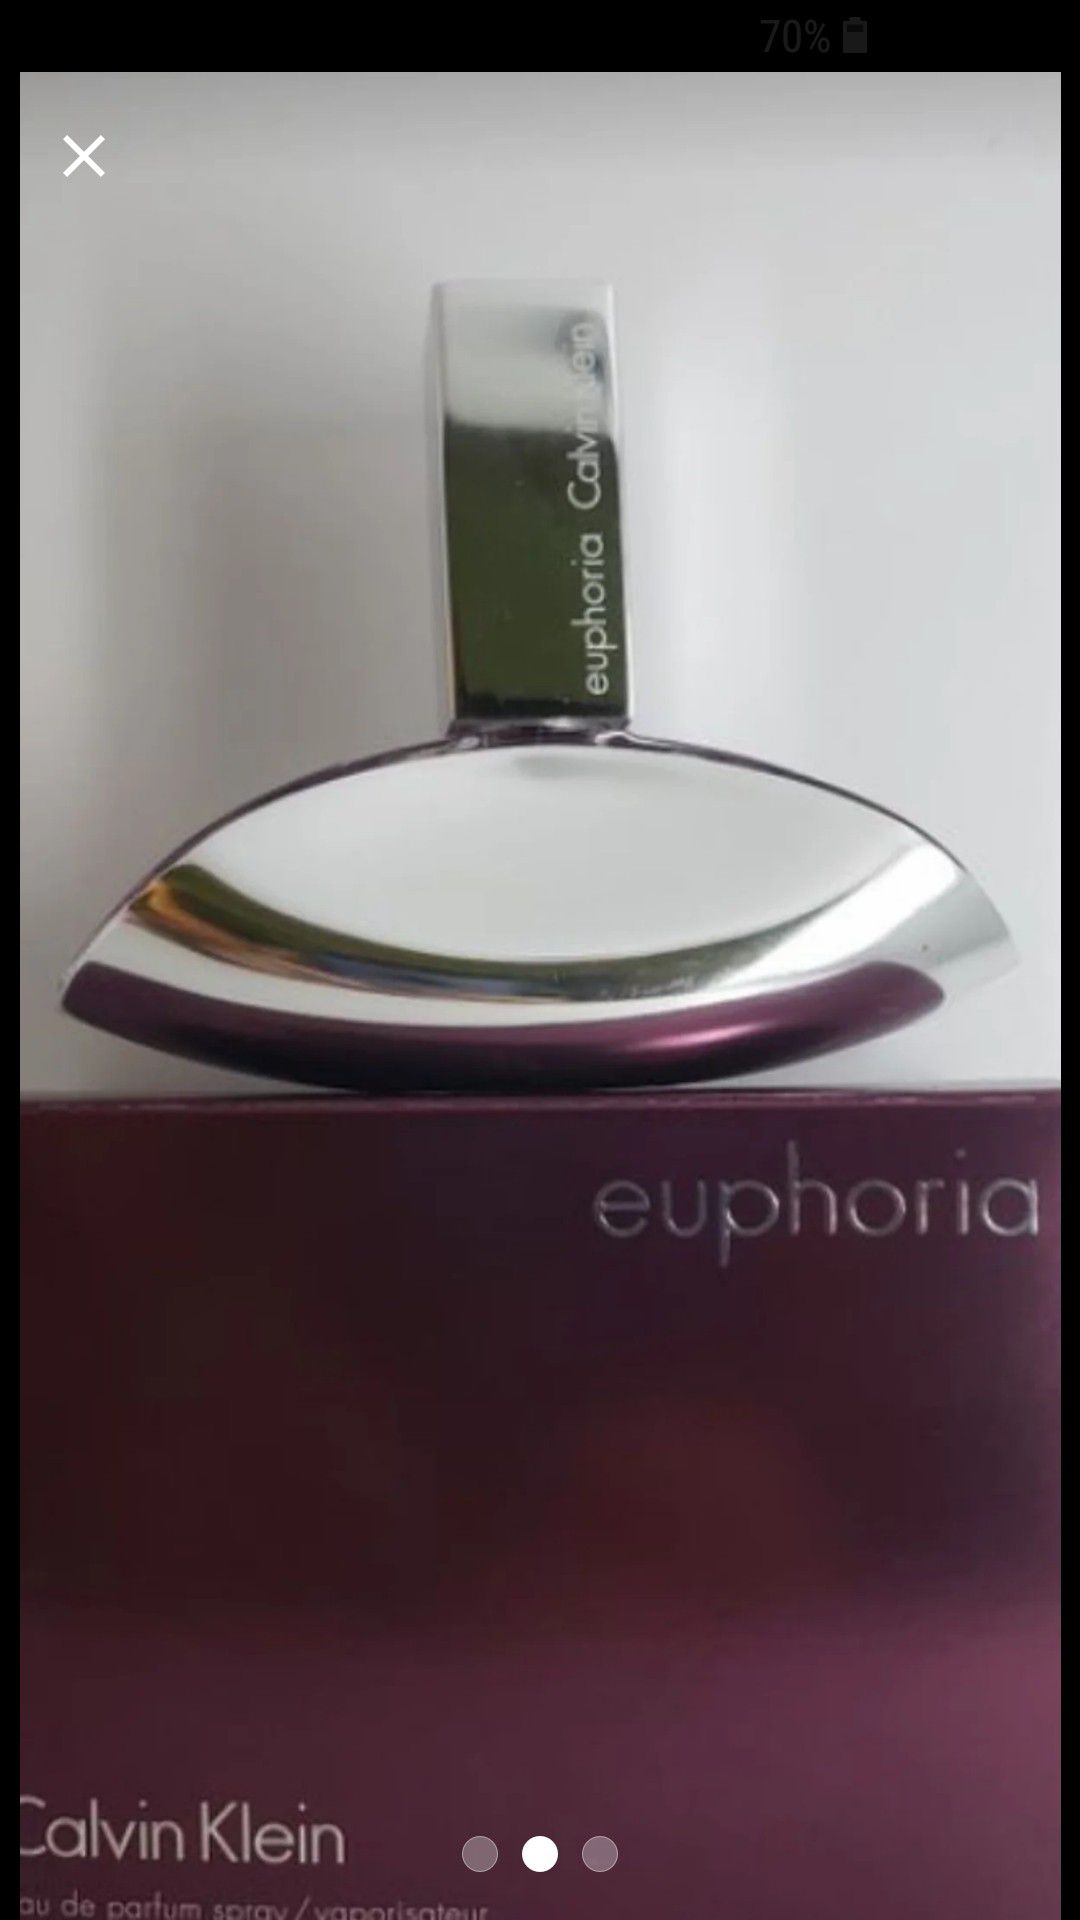 Euphoria 100% original comprado en Ulta, no del callejón